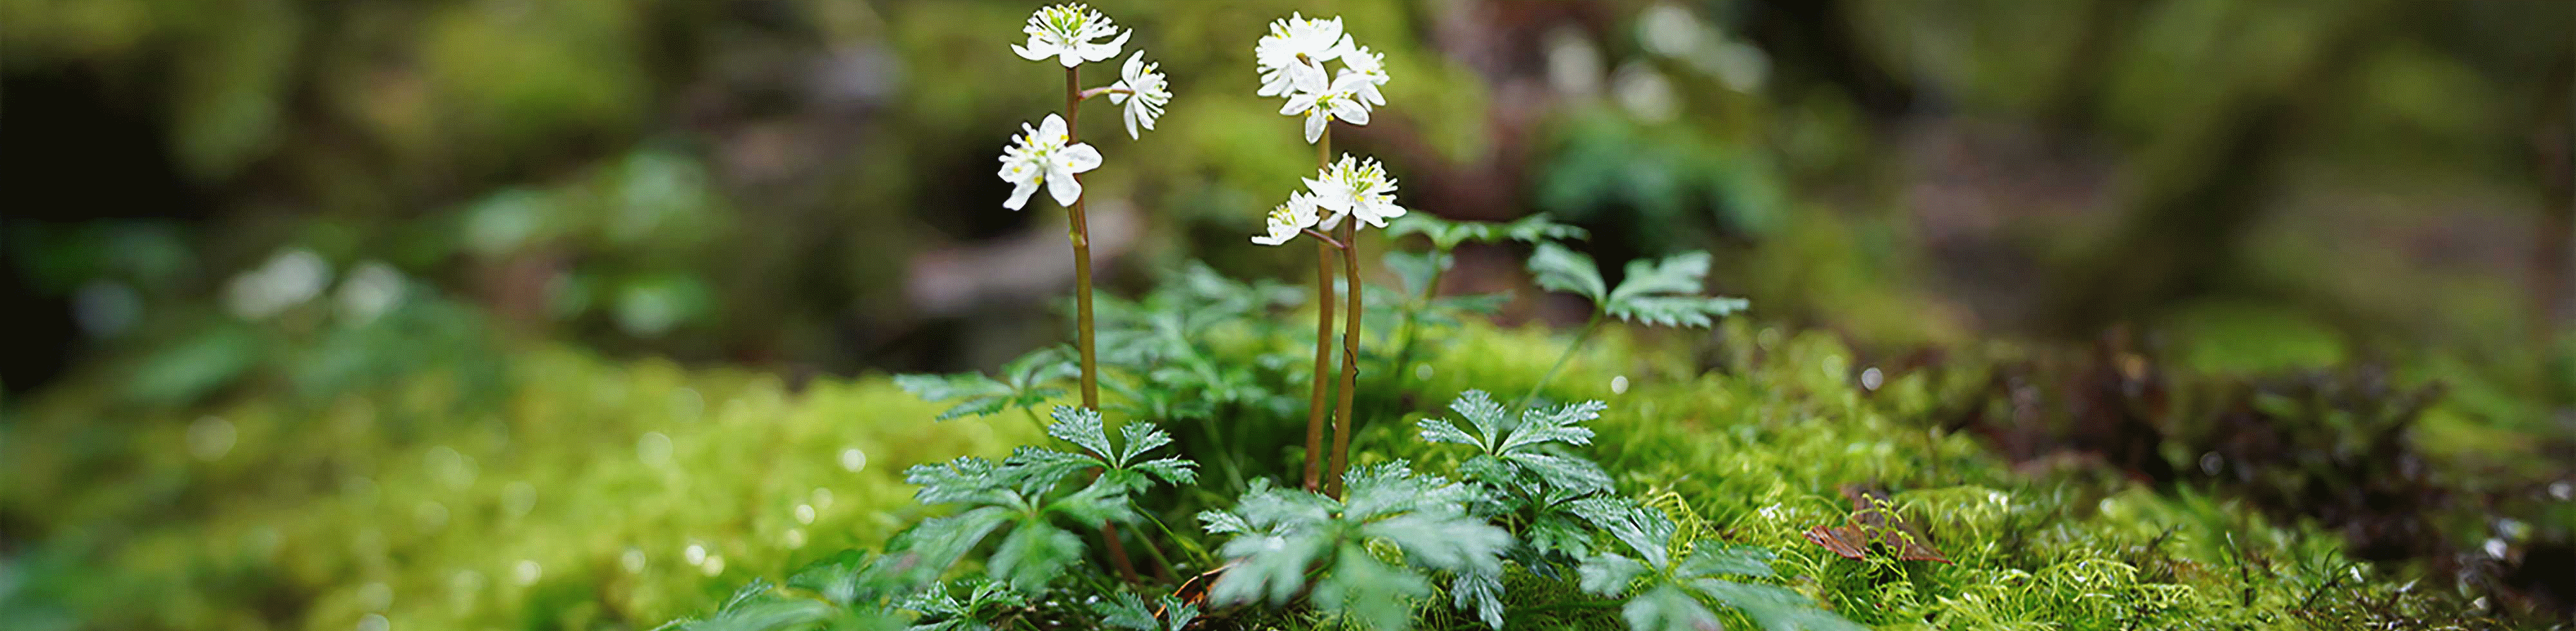 Snímek zaostřený na malou květinu na skále v lese, s výrazným rozmazáním před květinou i za ní.